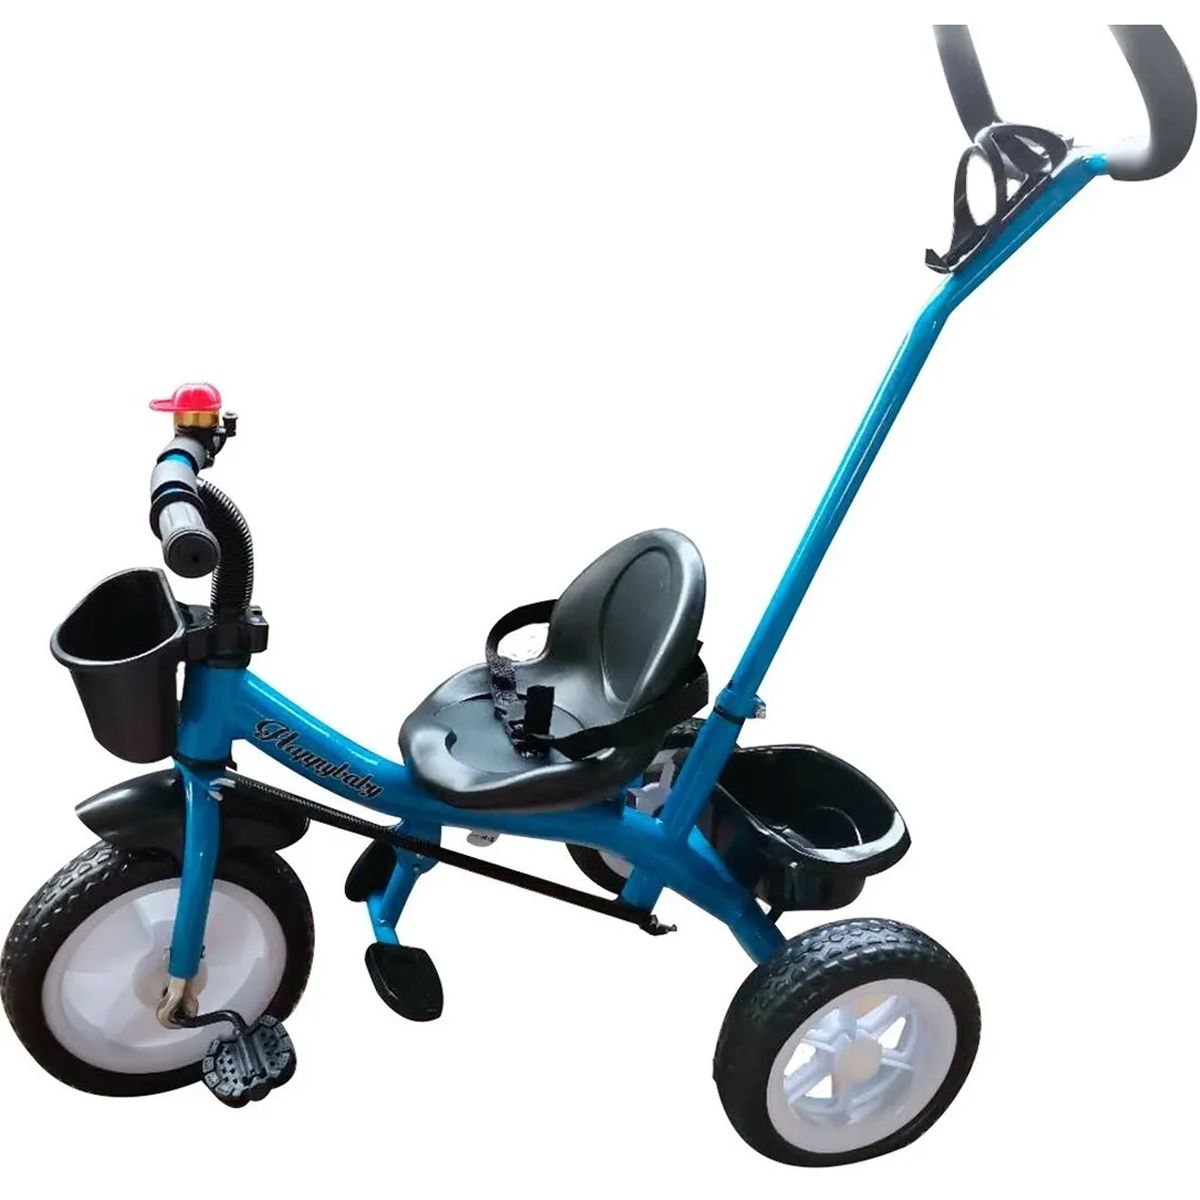 Triciclo Infantil 2 em 1 com Empurrador Motoca Velotrol BW082AZ - Azul